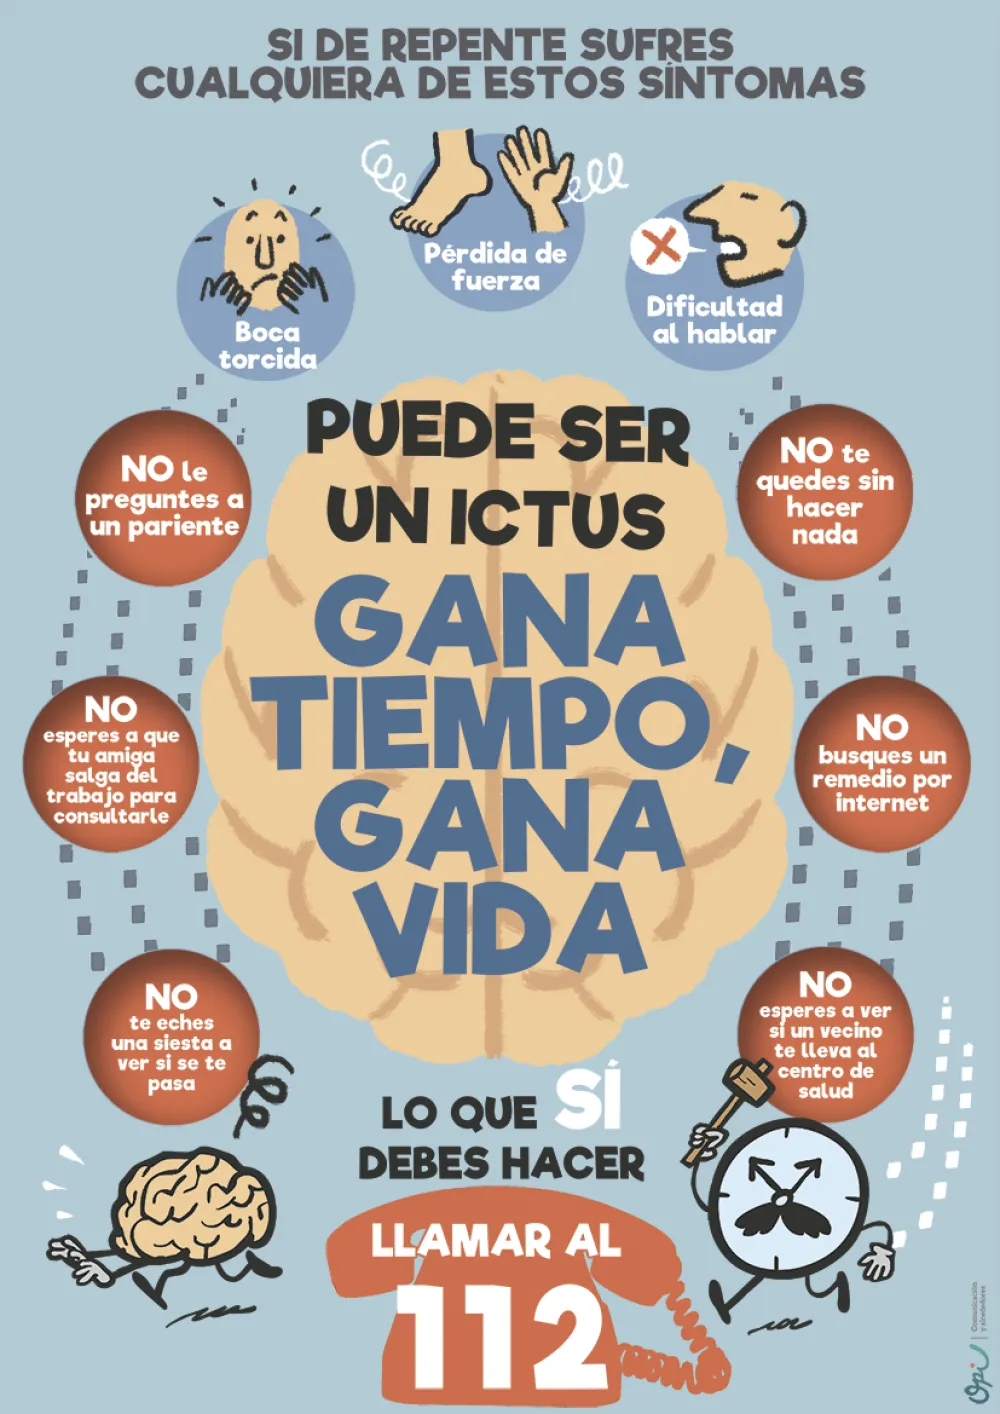 Foto del cartel sobre síntomas de detección del ictus